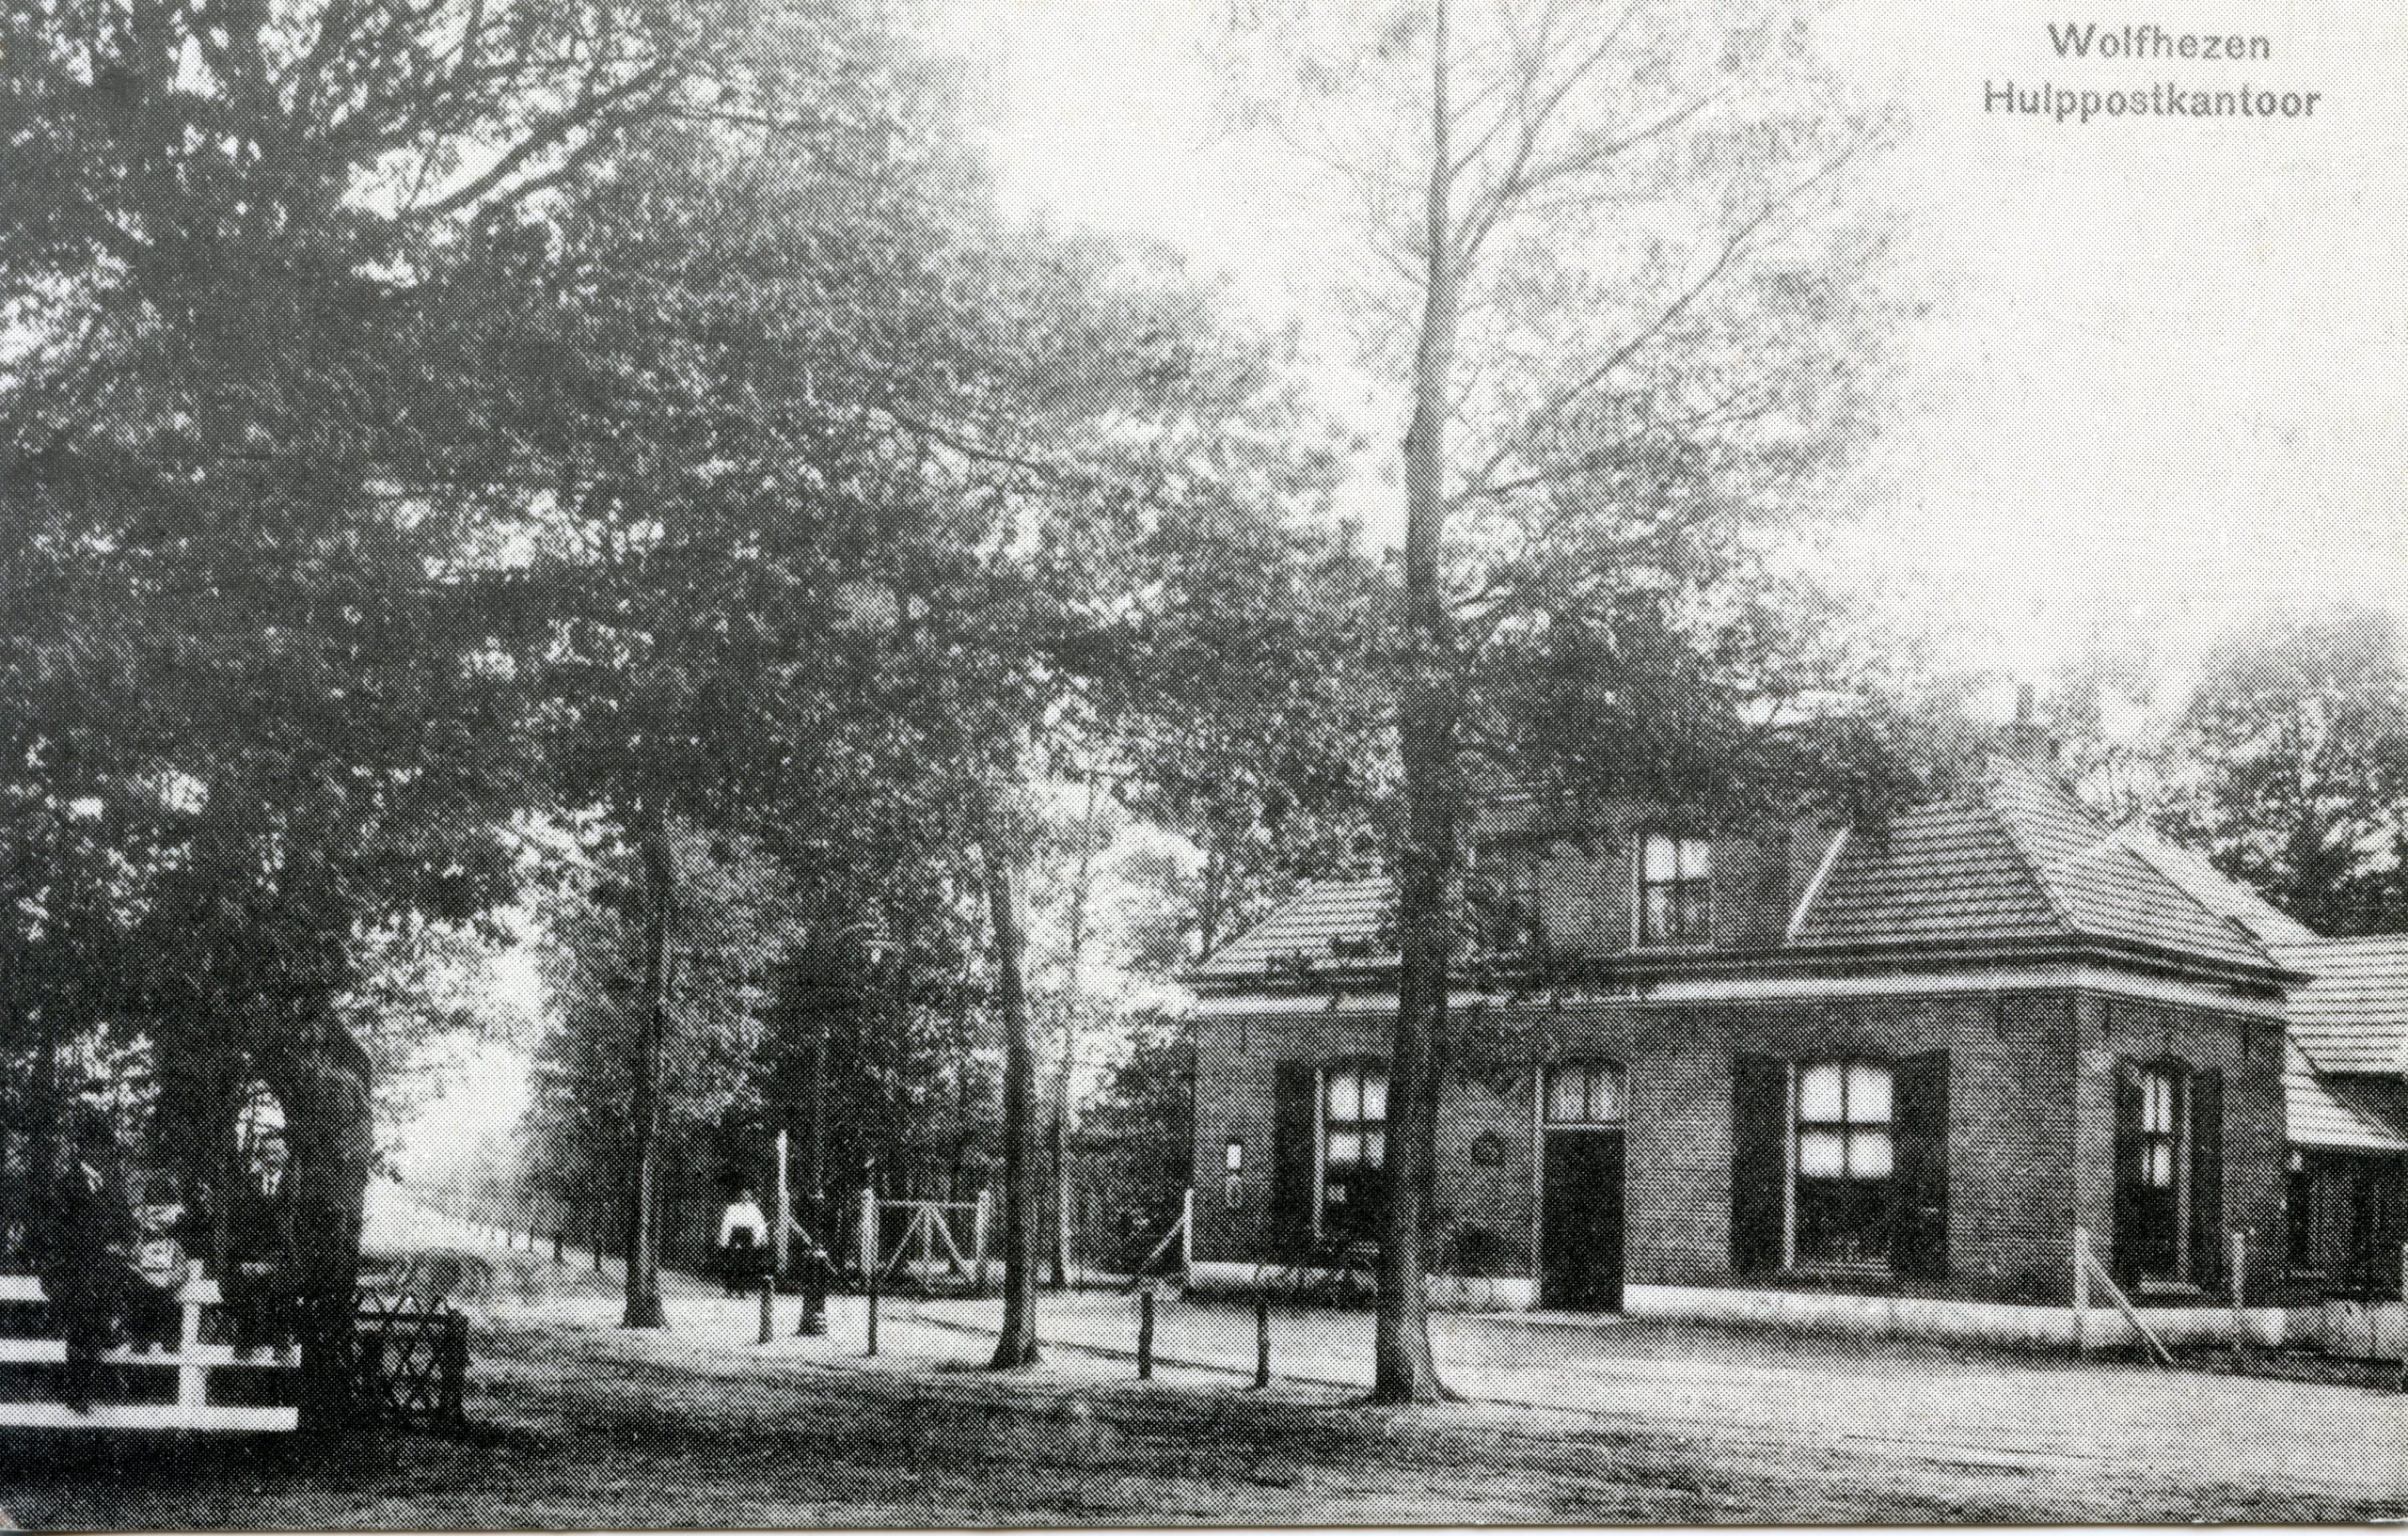 Wolfheze hulppostkantoor ca 1910 Ansichtkaart uitg Foto de Jong.